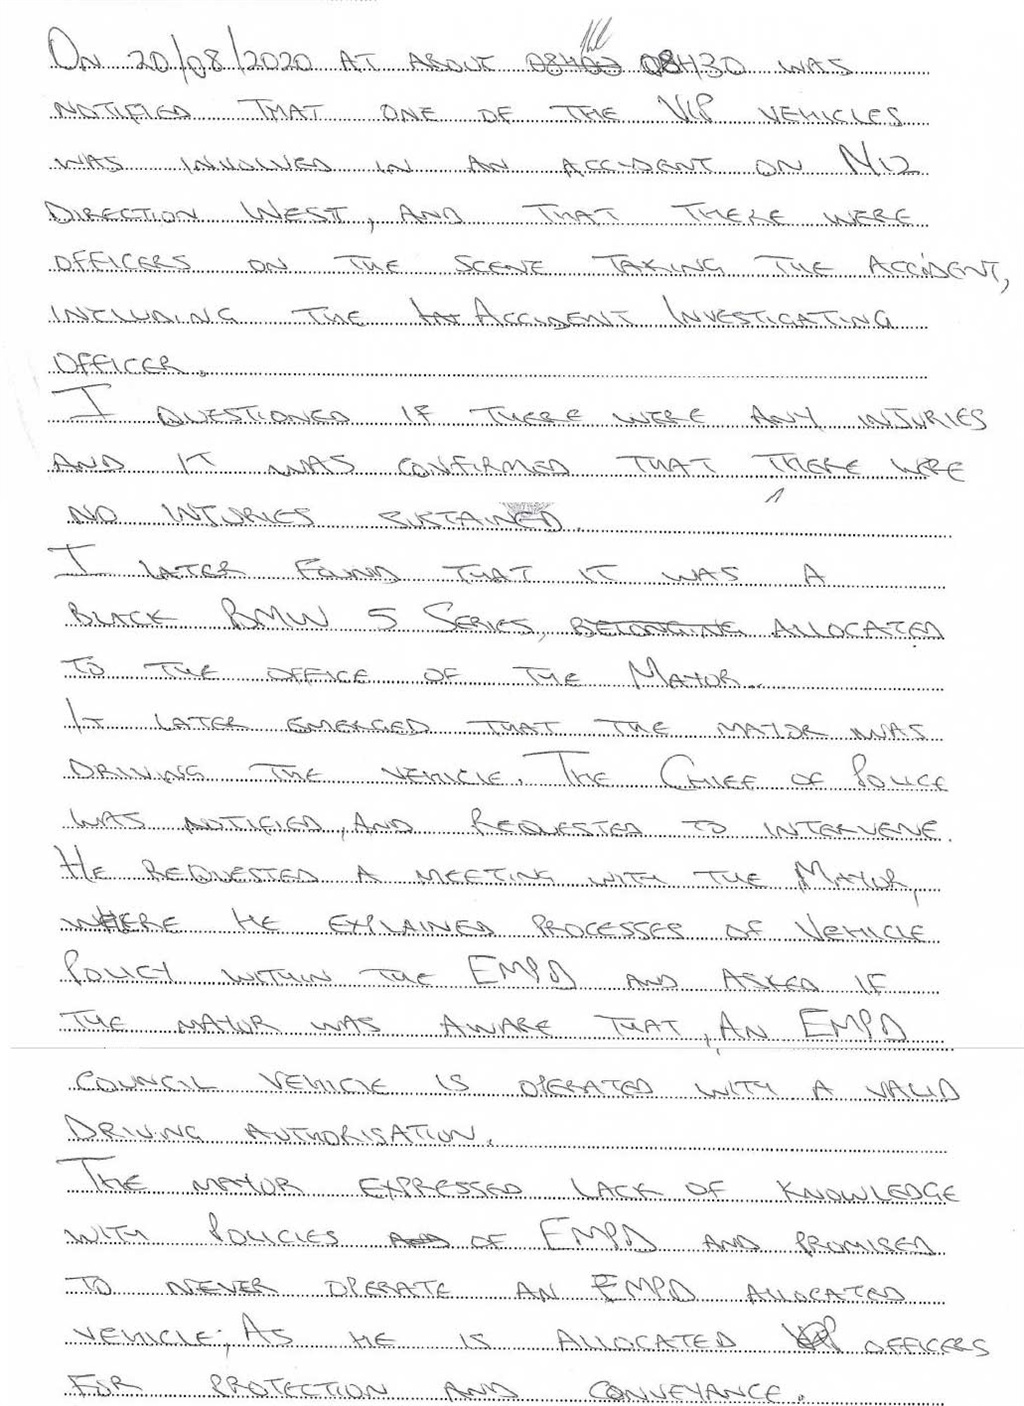 Handwritten sworn statement by the superintendent 